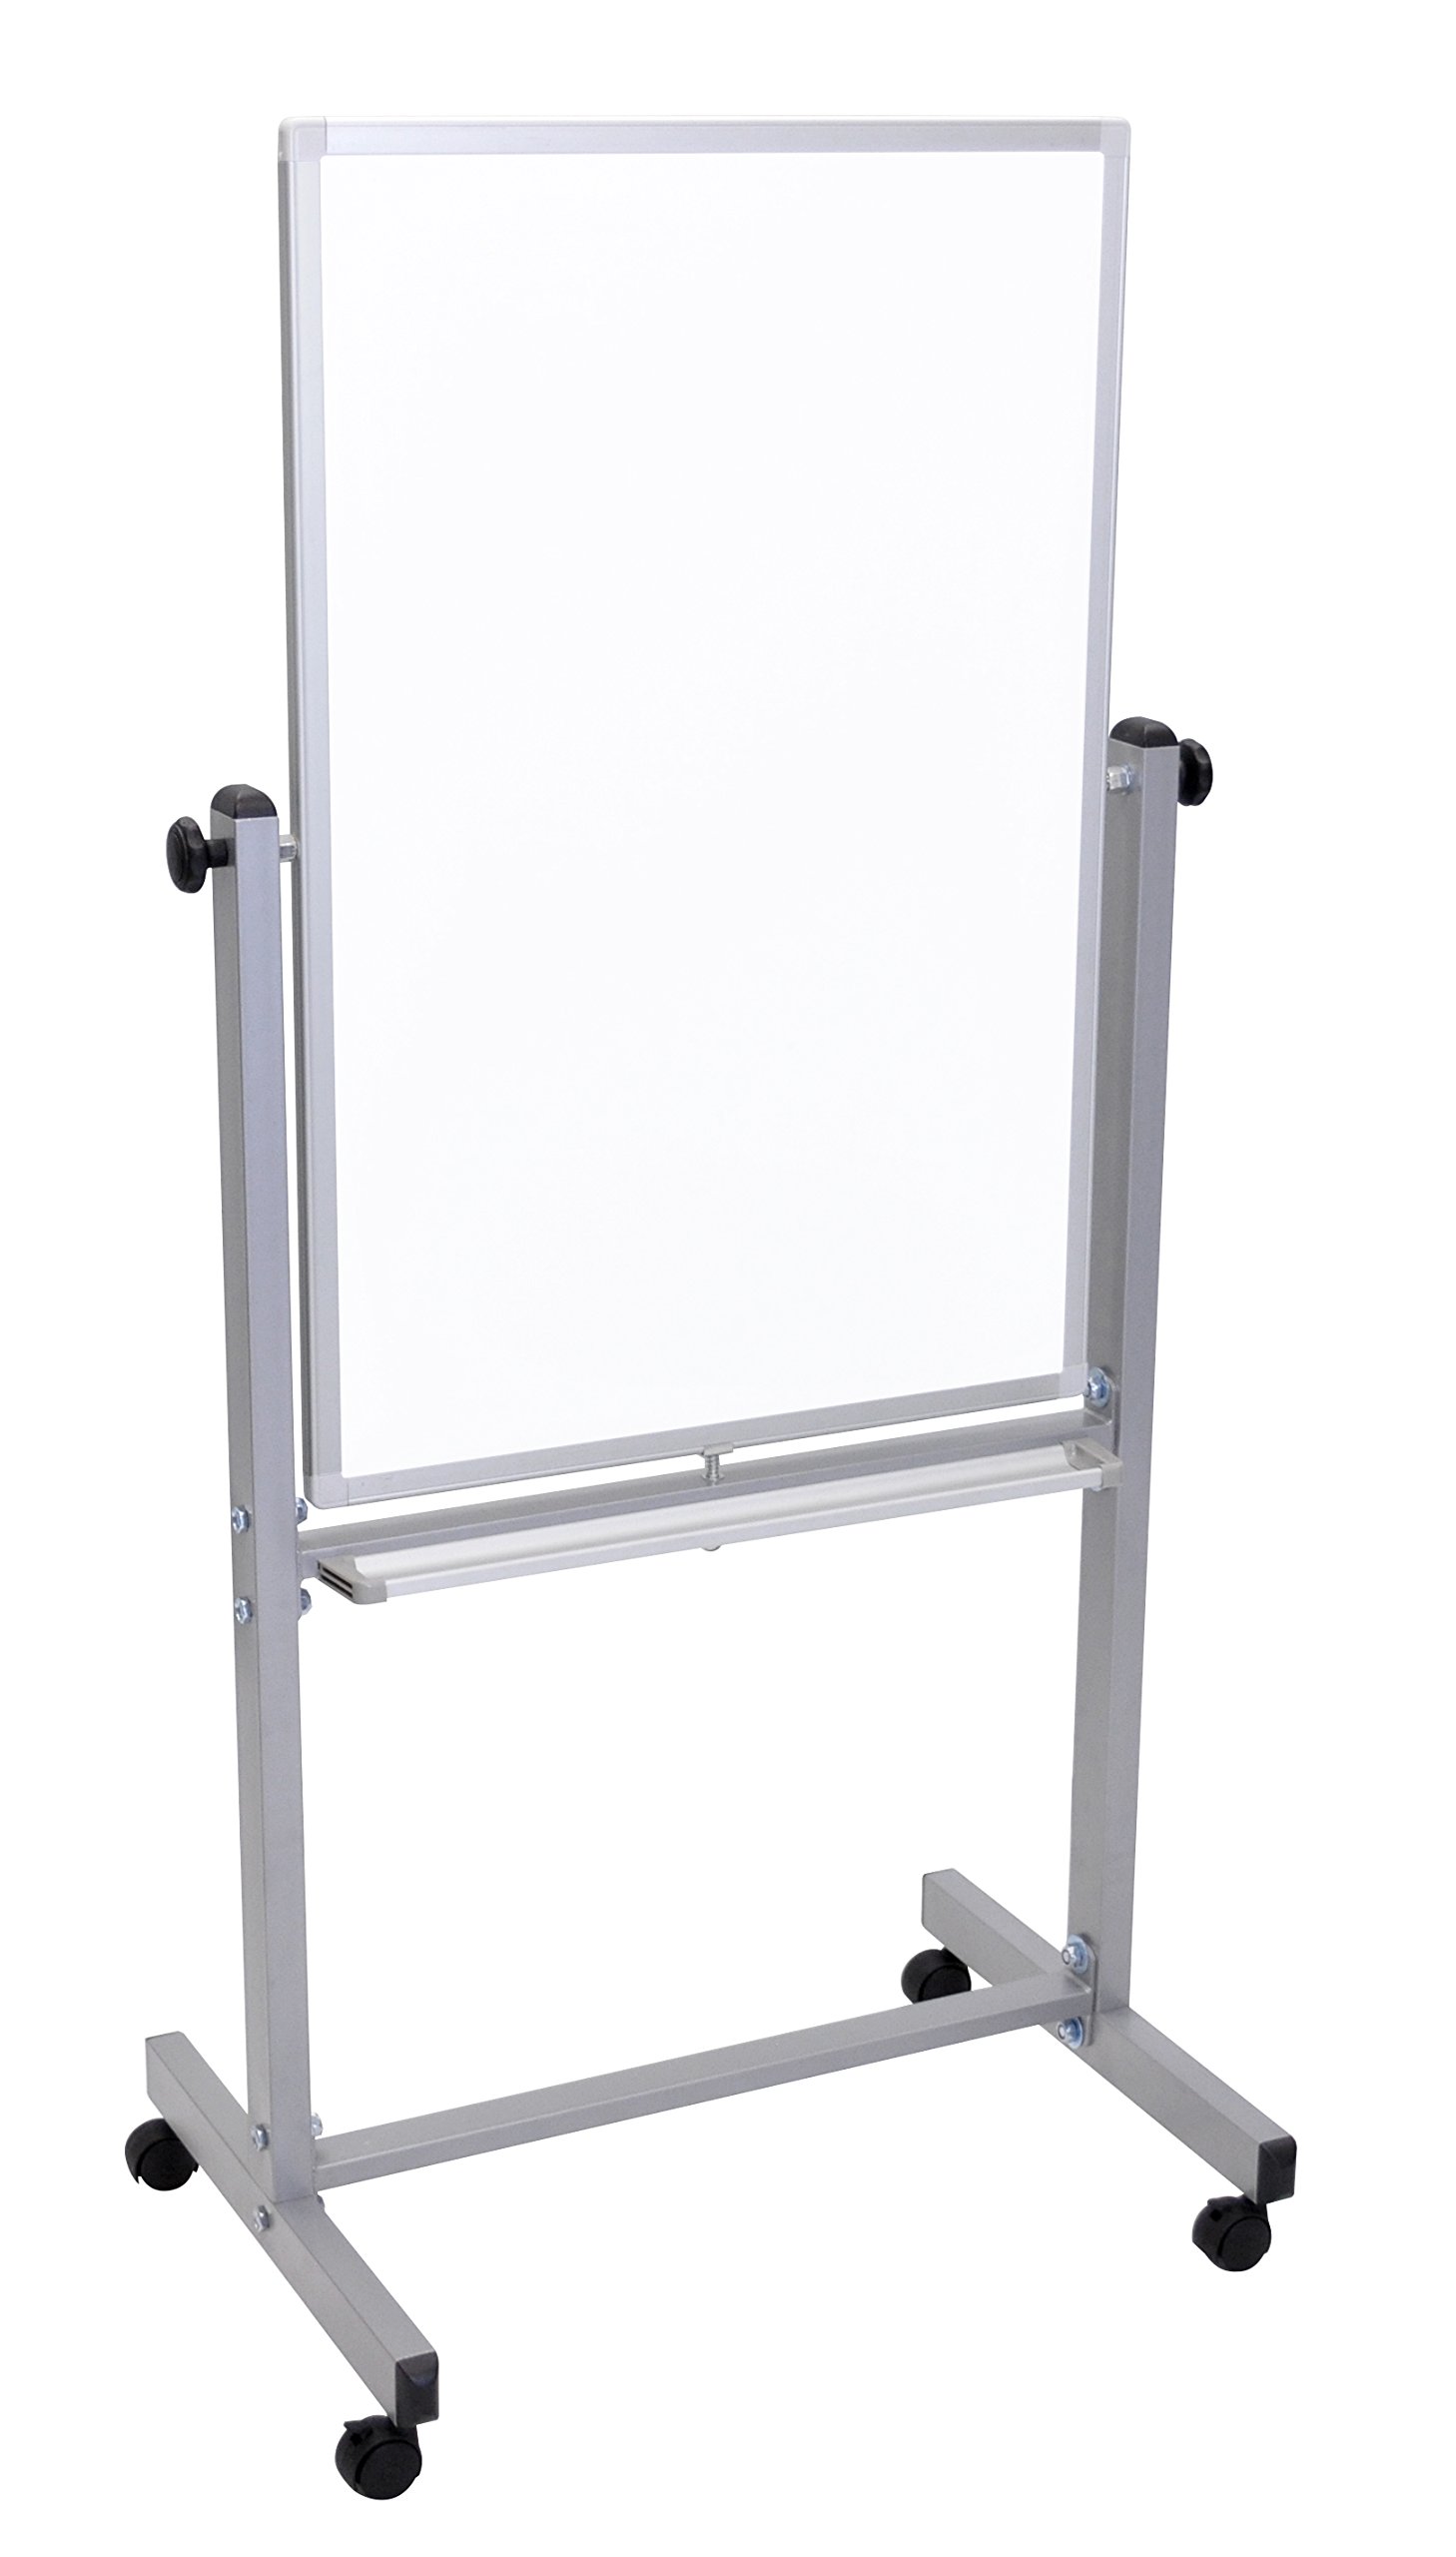 LUXOR Pizarra blanca magnética móvil de borrado en seco de doble cara con marco y soporte de aluminio